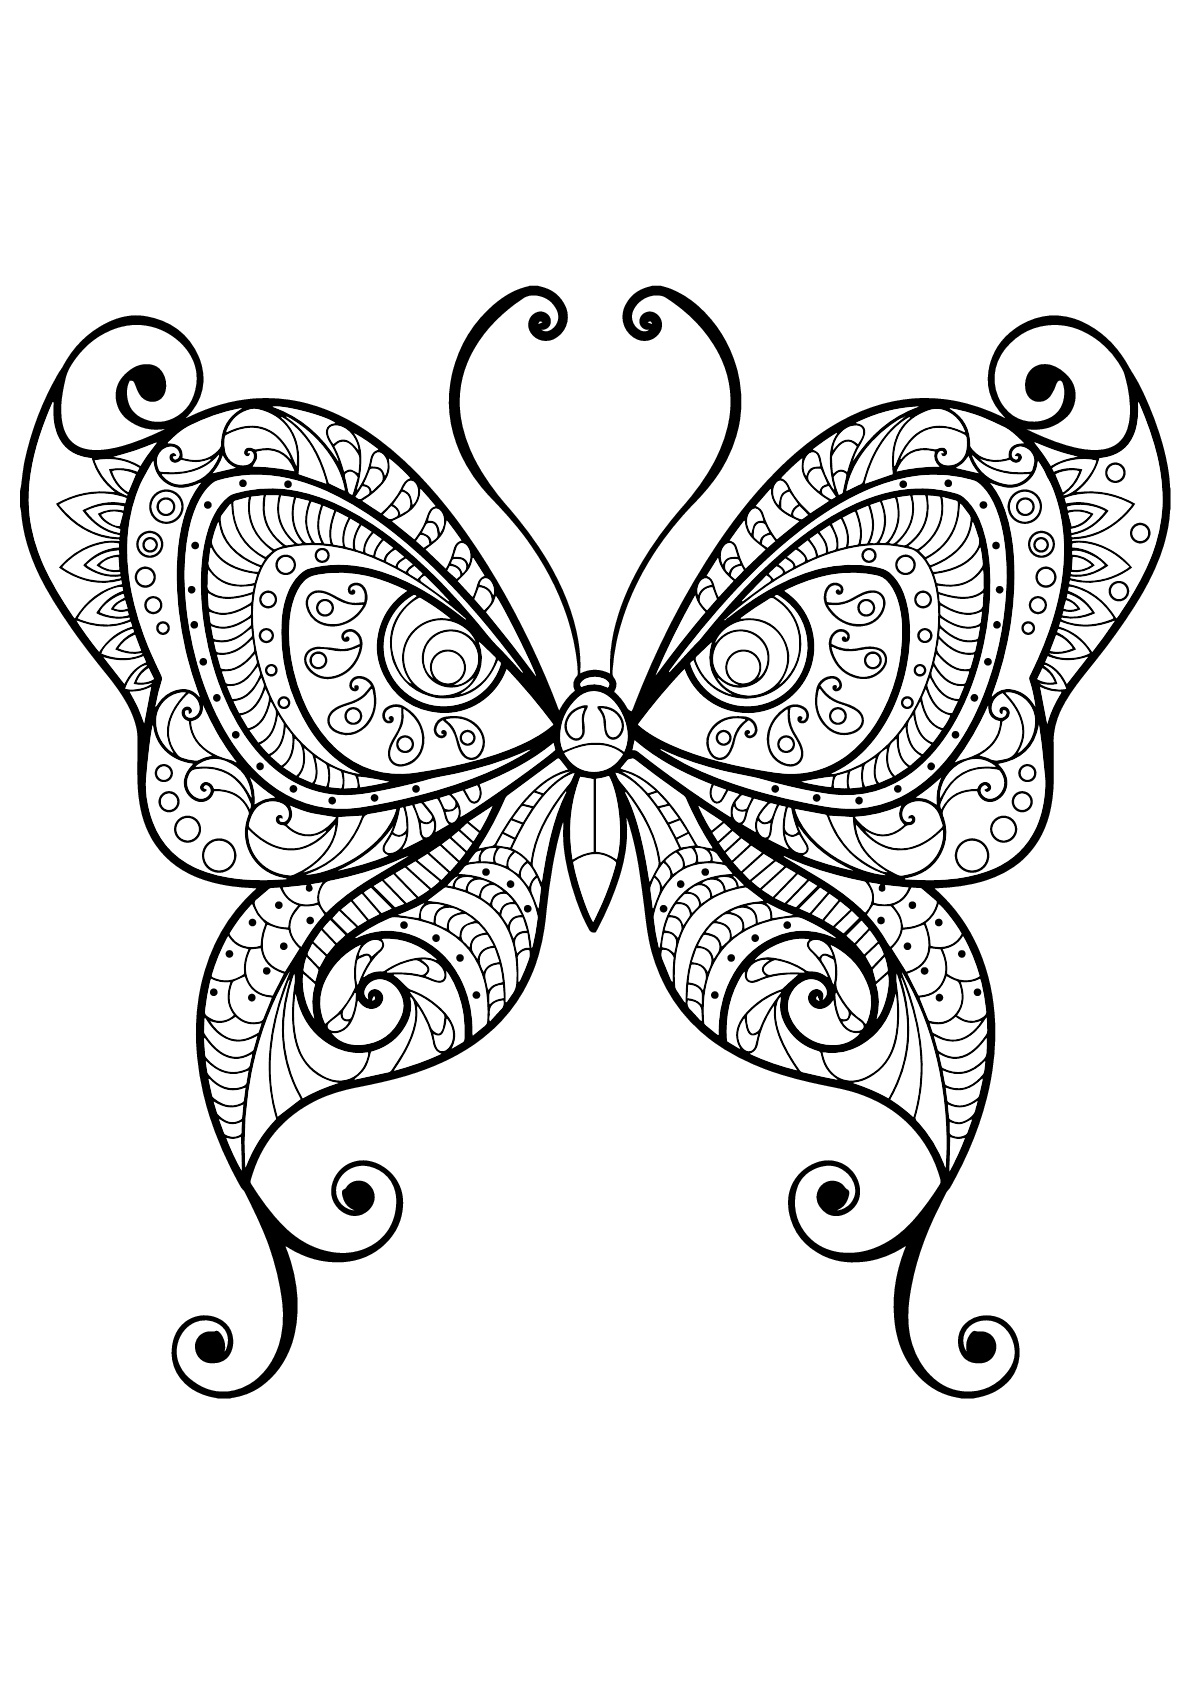 Coloriage De Papillons Pour Enfants - Coloriage De Papillons concernant Coloriage Papillon